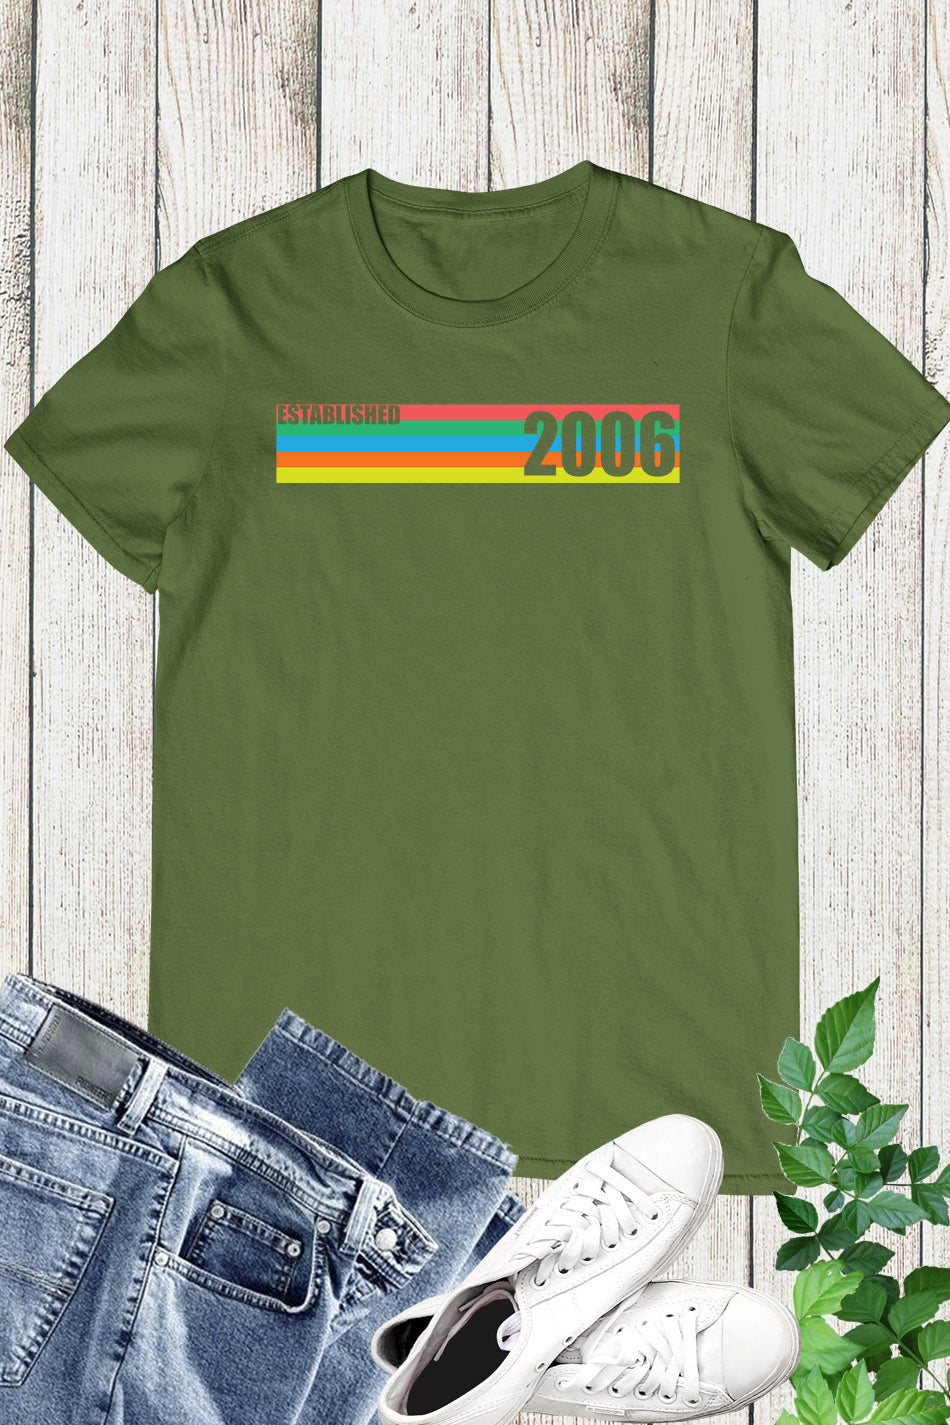 Established 2006 Vintage 18th Birthday Shirt